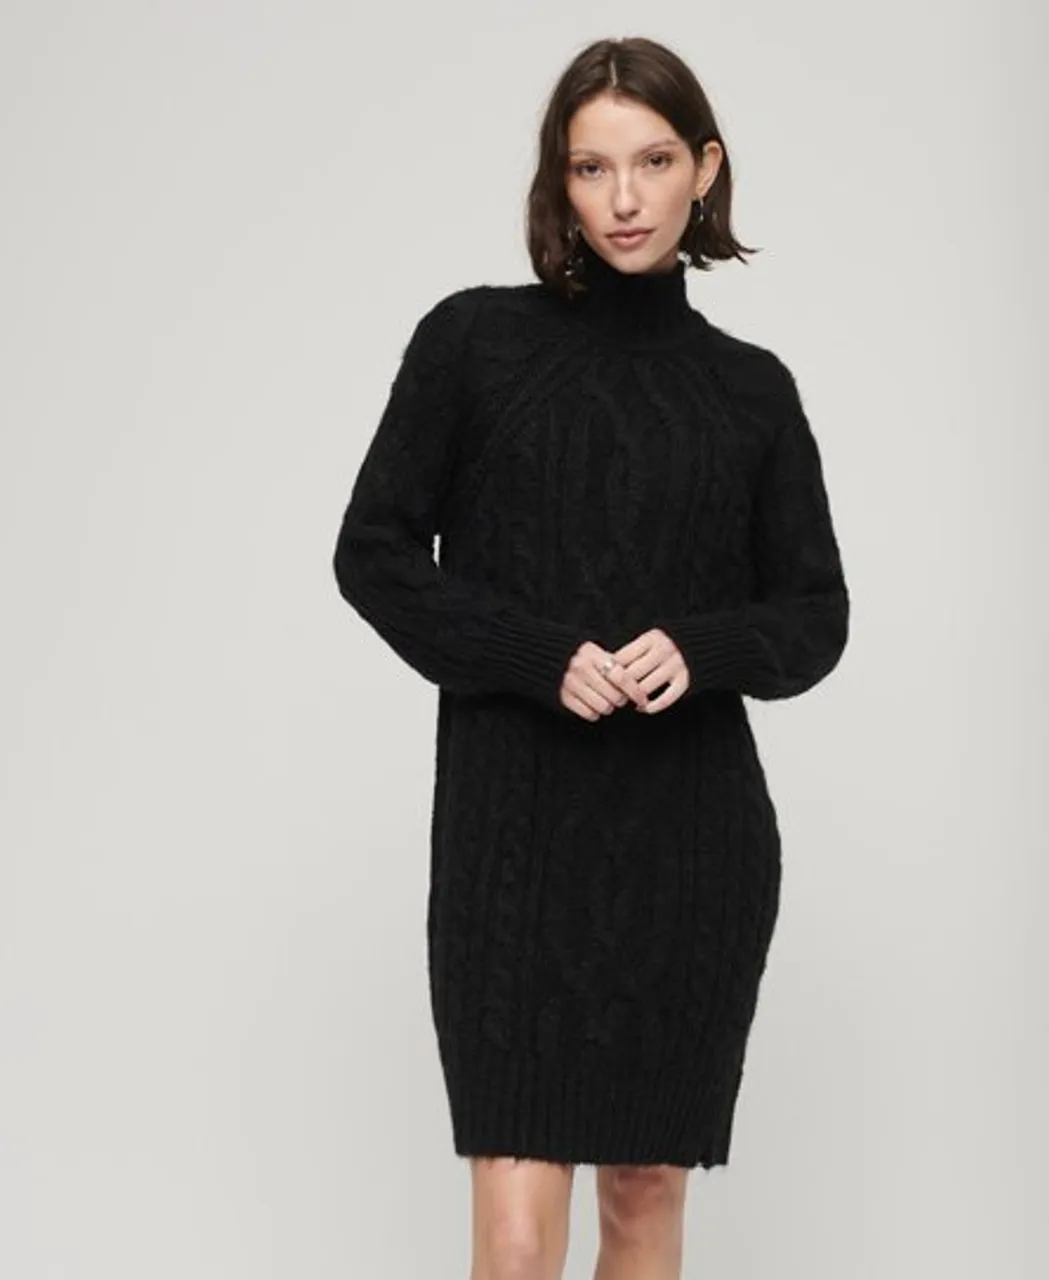 Superdry Women's Pulloverkleid mit Zopfmuster und Stehkragen Schwarz